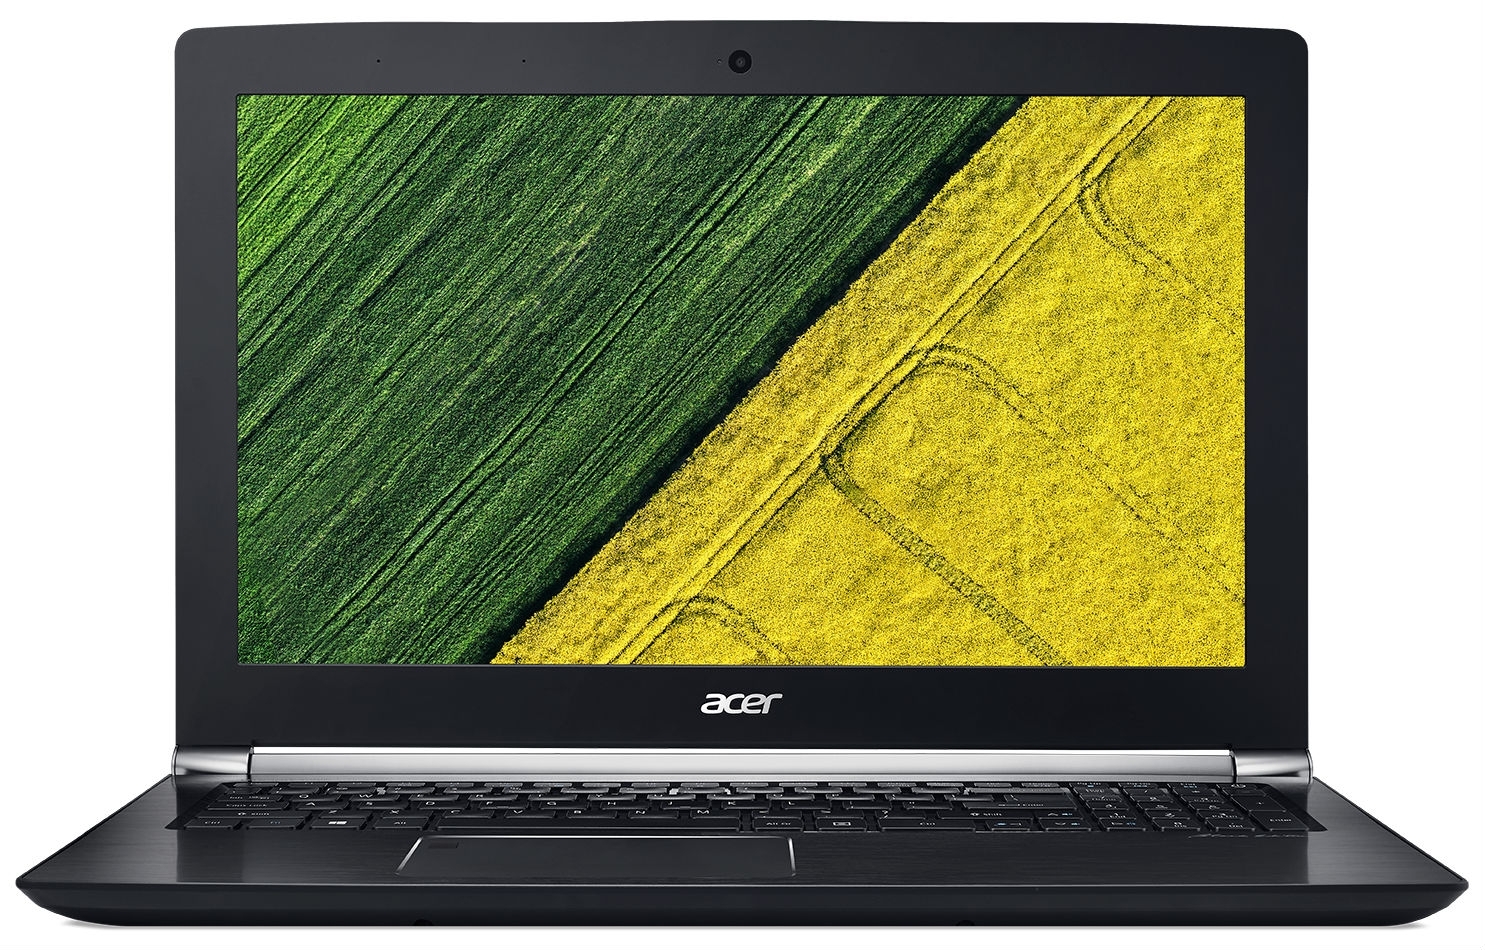 Изображение для компании Acer под номером 57